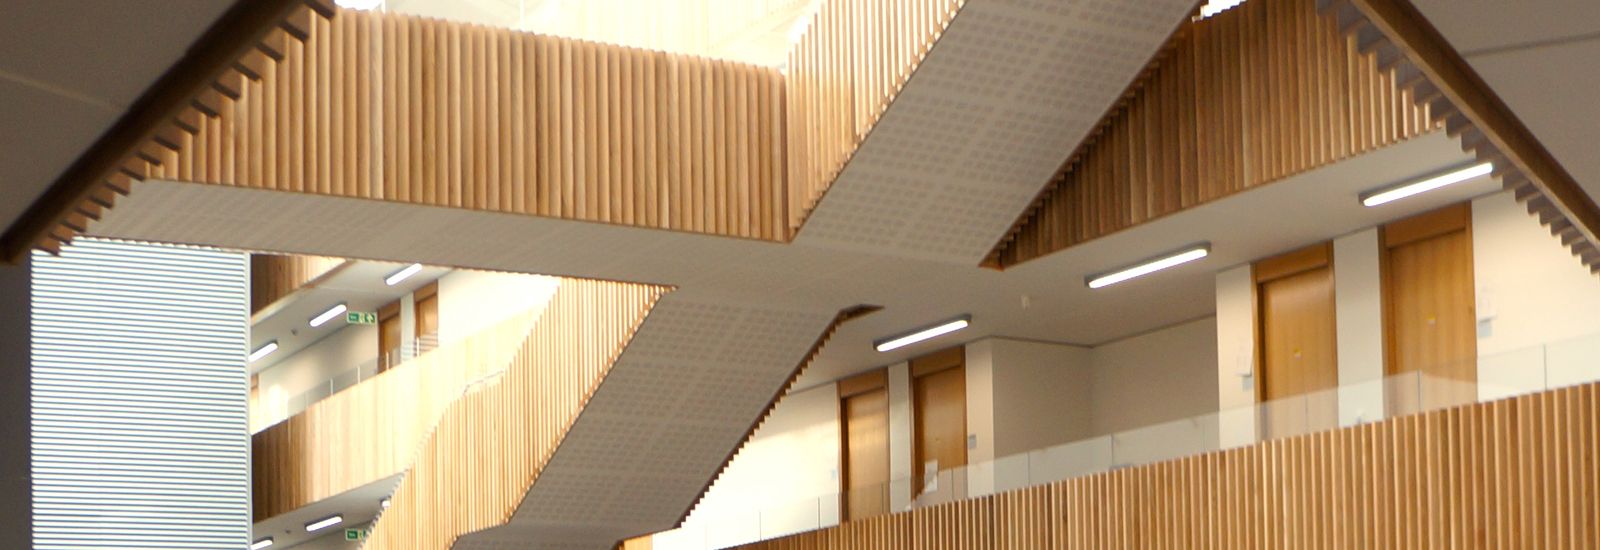 The interior of the Mathematics Institute